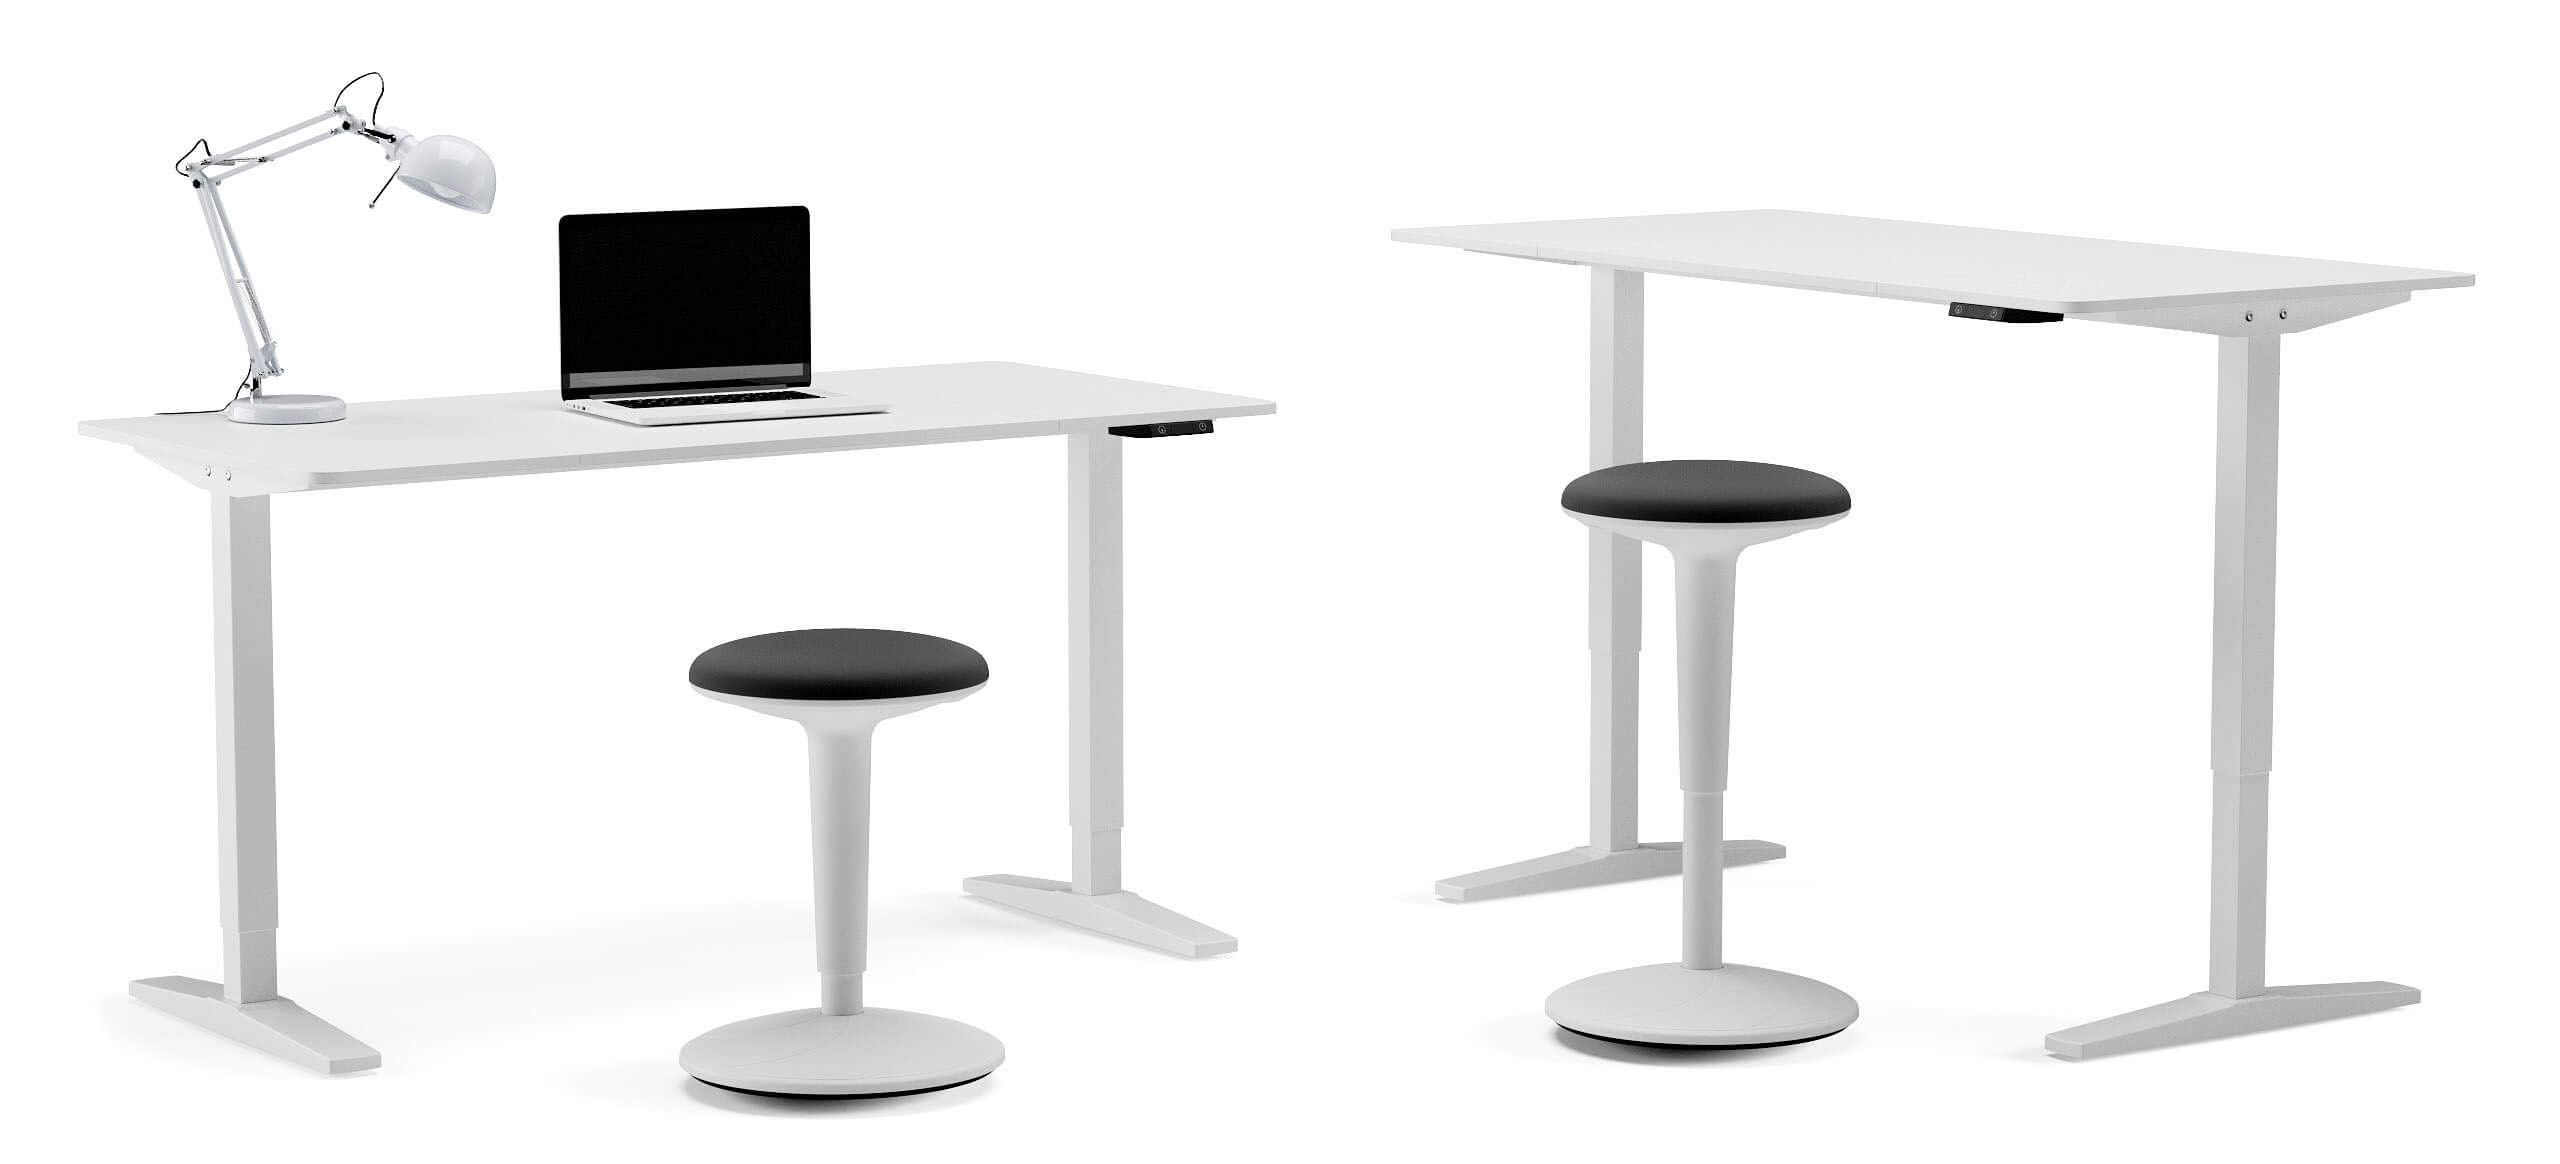 Mesa escritorio elevable FLAP 140 x 70, minimalista blanco.